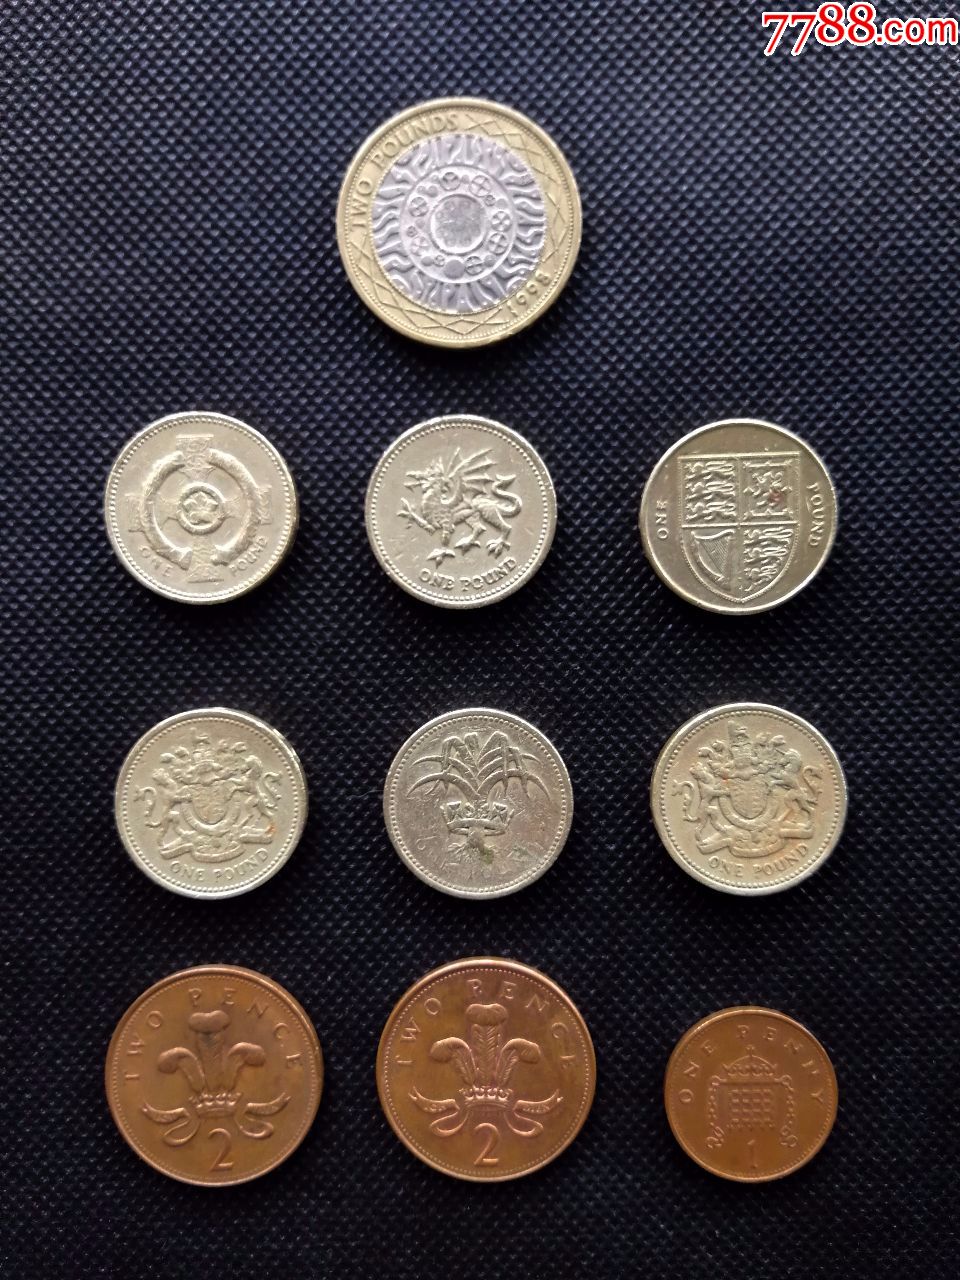 老版有收藏价值的英镑硬币